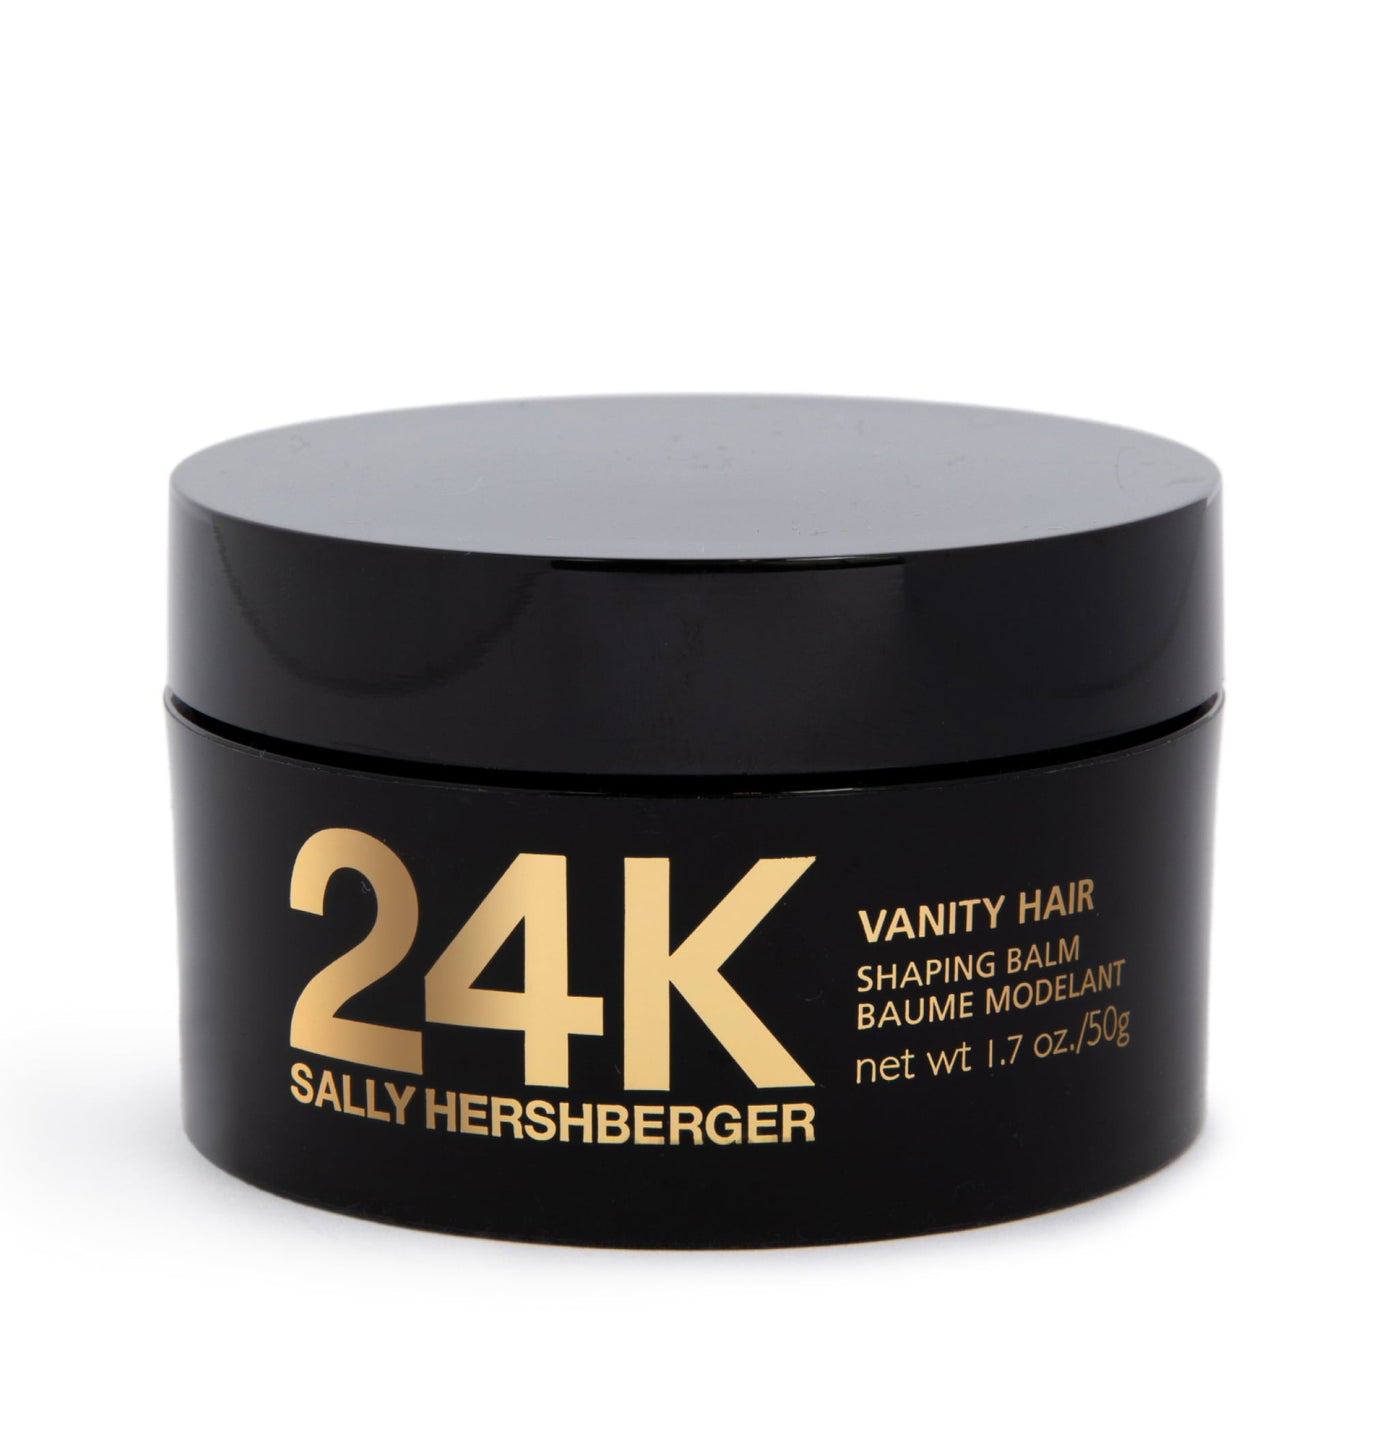 24K Vanity Hair Shaping Balm - Pack of 6